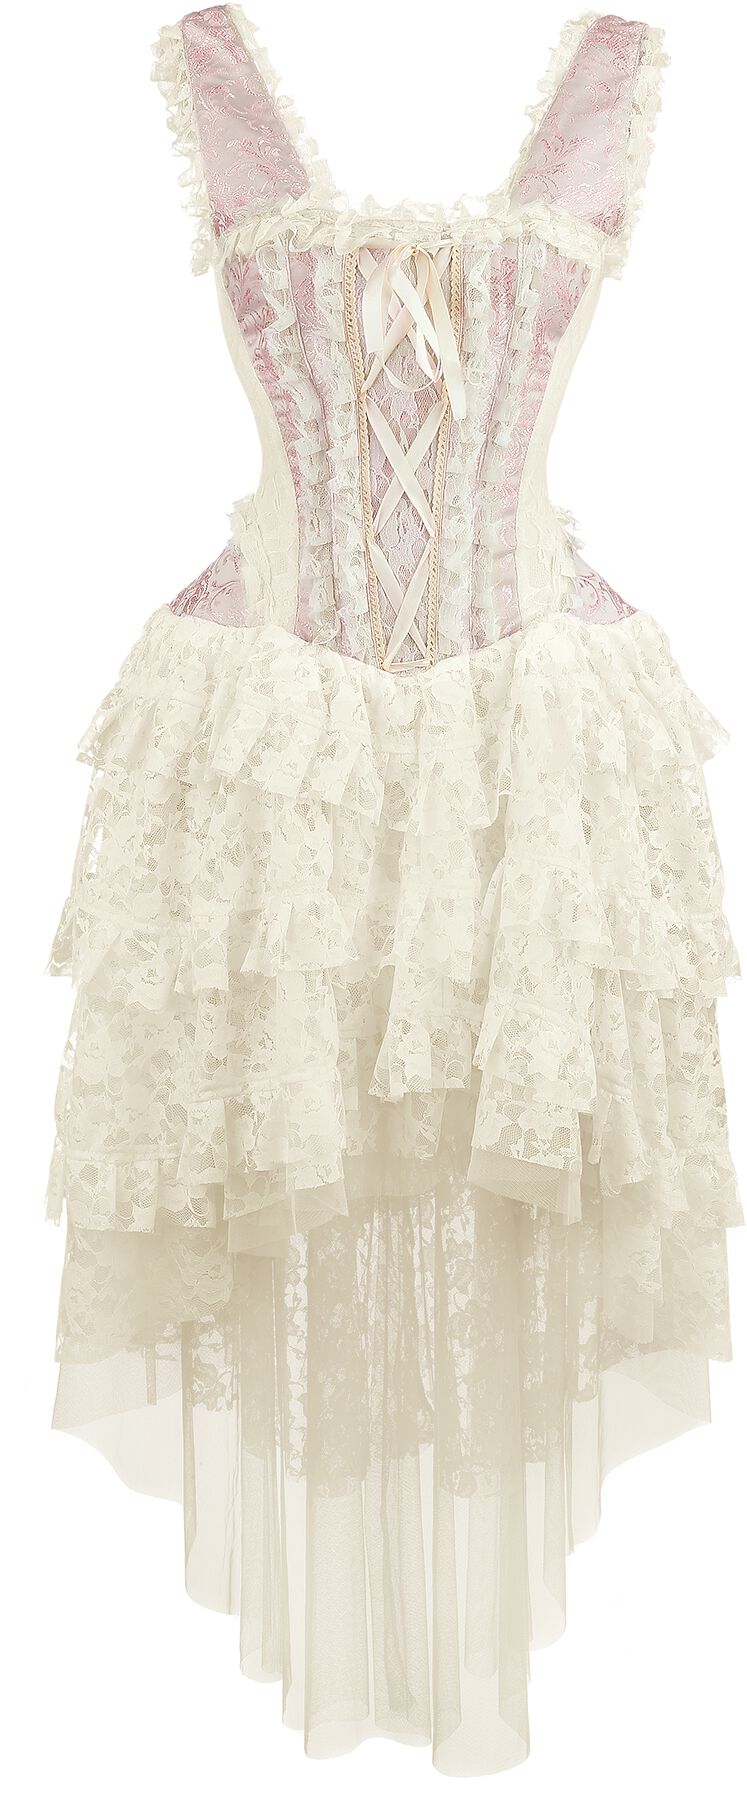 Burleska - Gothic Kleid lang - Ophelie Dress - S bis 3XL - für Damen - Größe 3XL - rosa